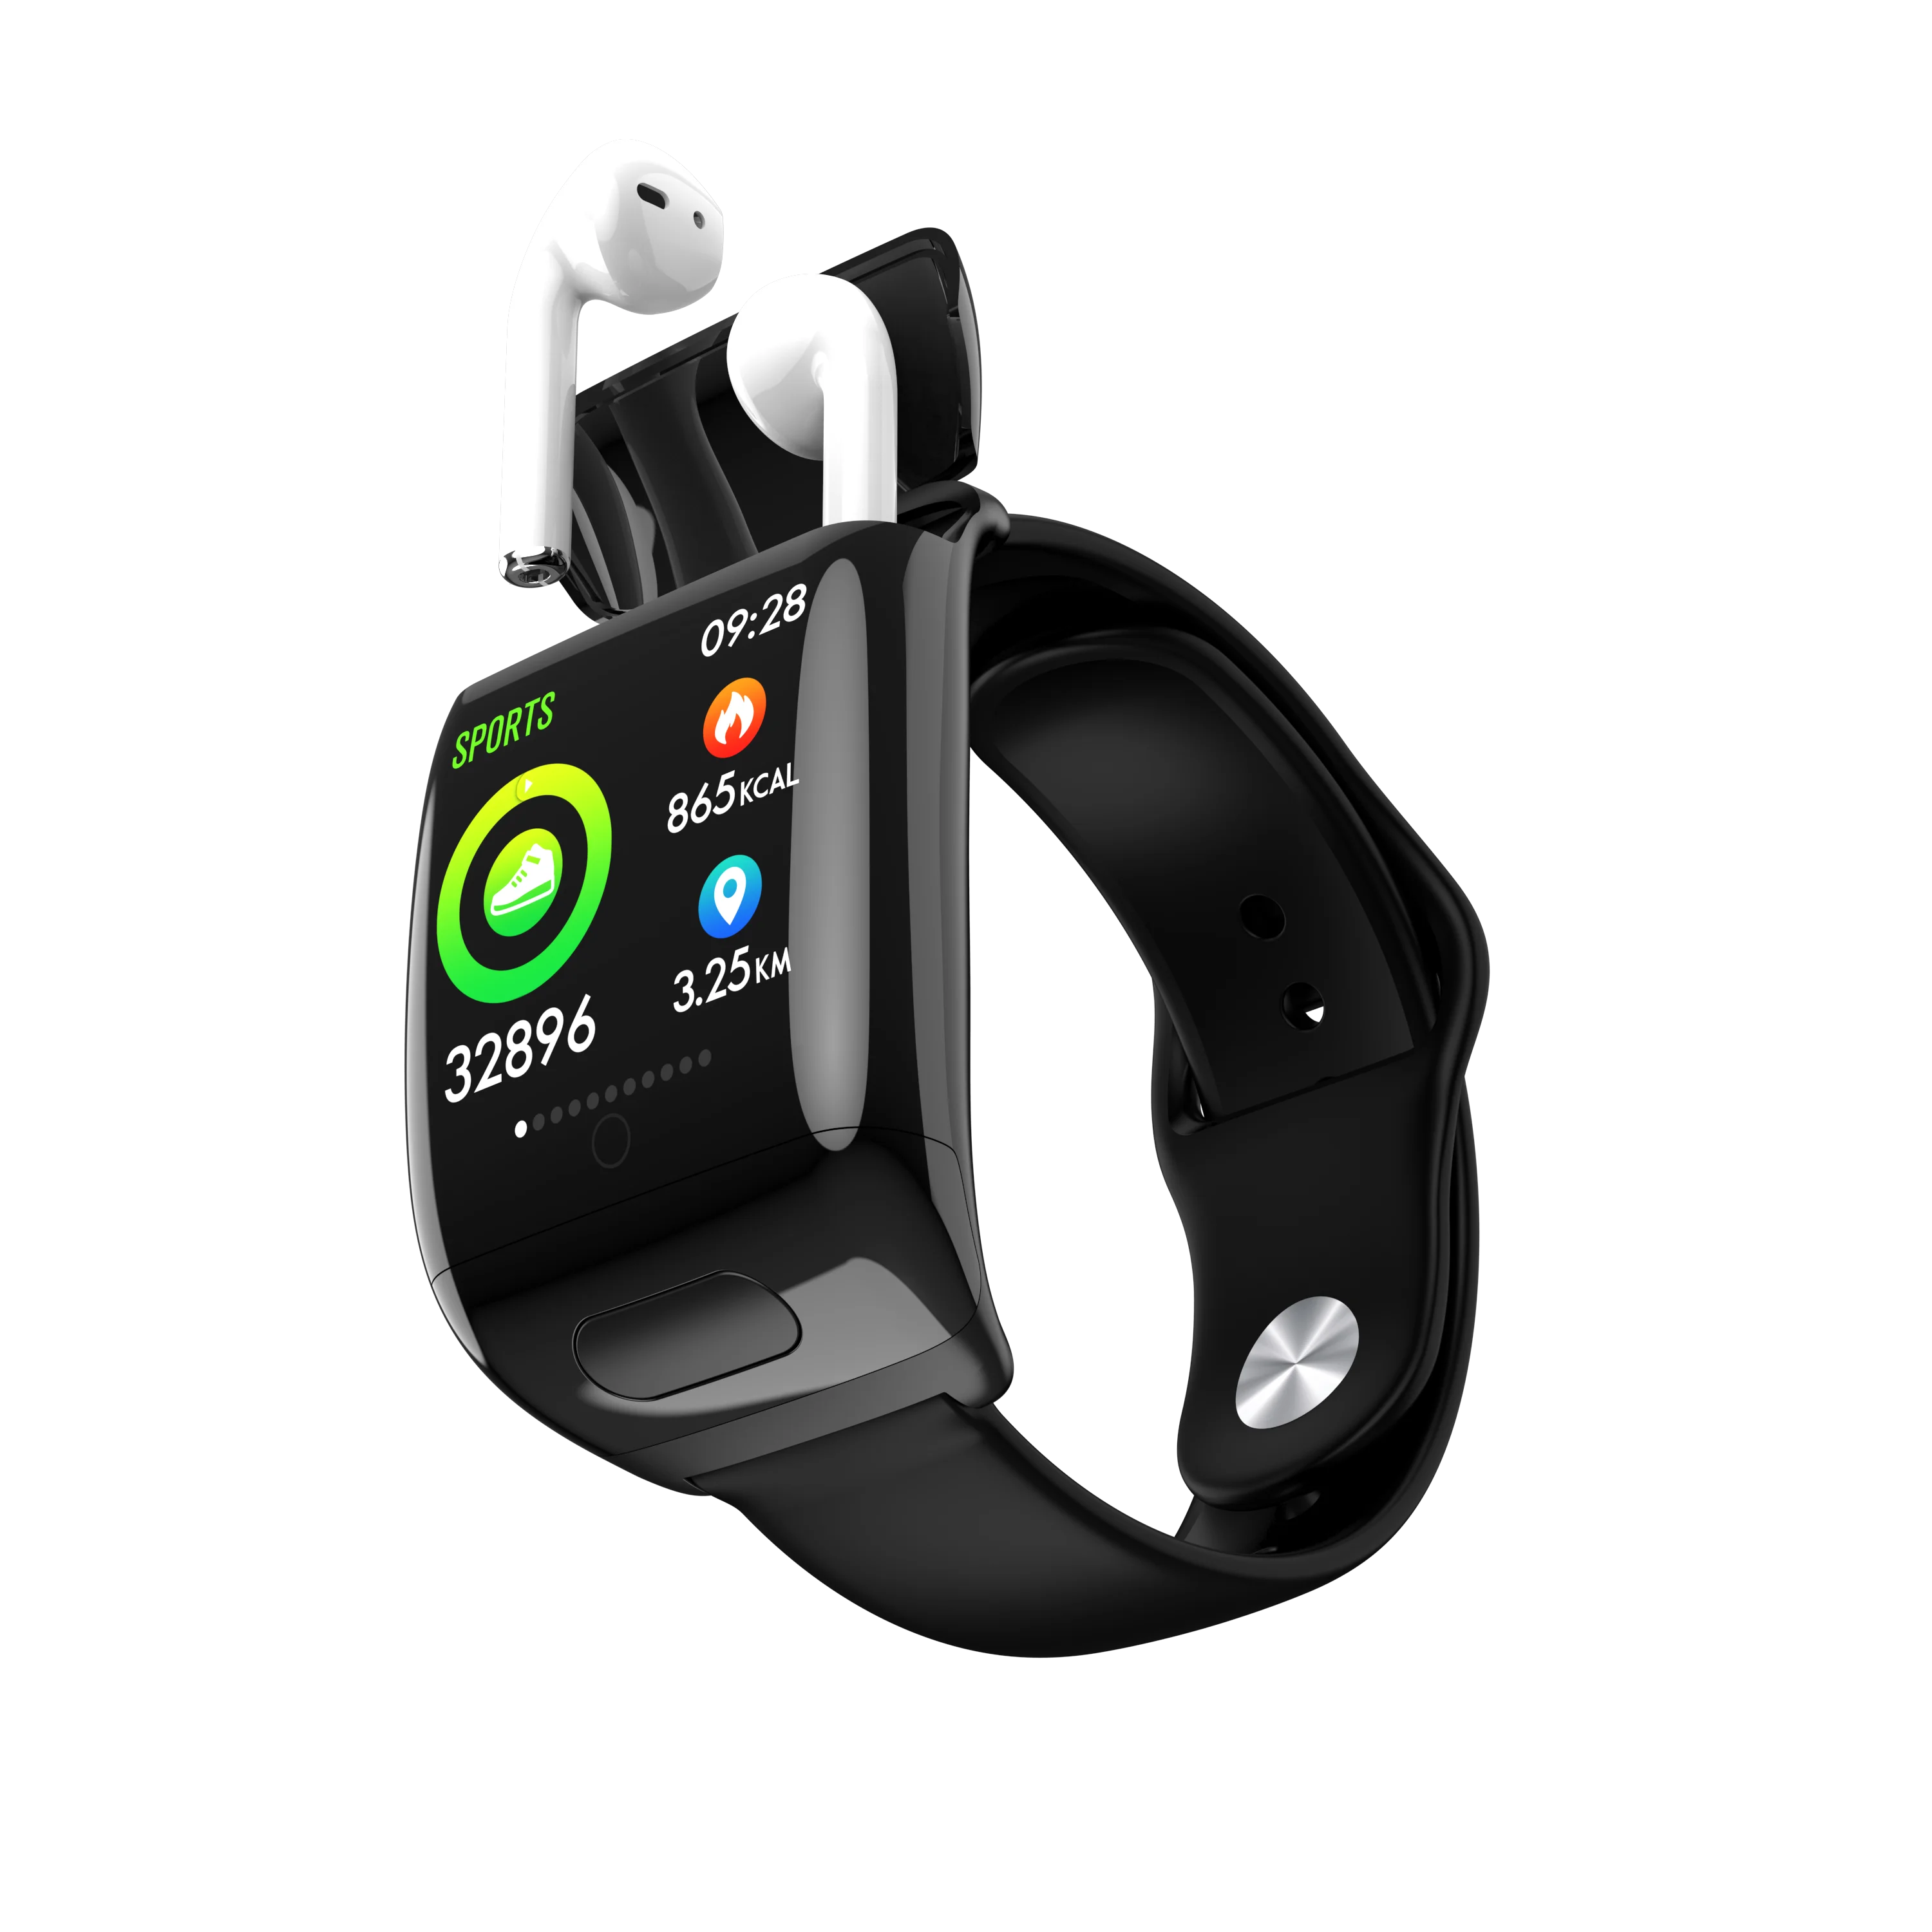 

Newest Smart Watch 2 in 1 G36 Sports Smart Watch Version 5.0 Wireless Earbuds Heart Rate Monitor Smart Bracelet, Black white